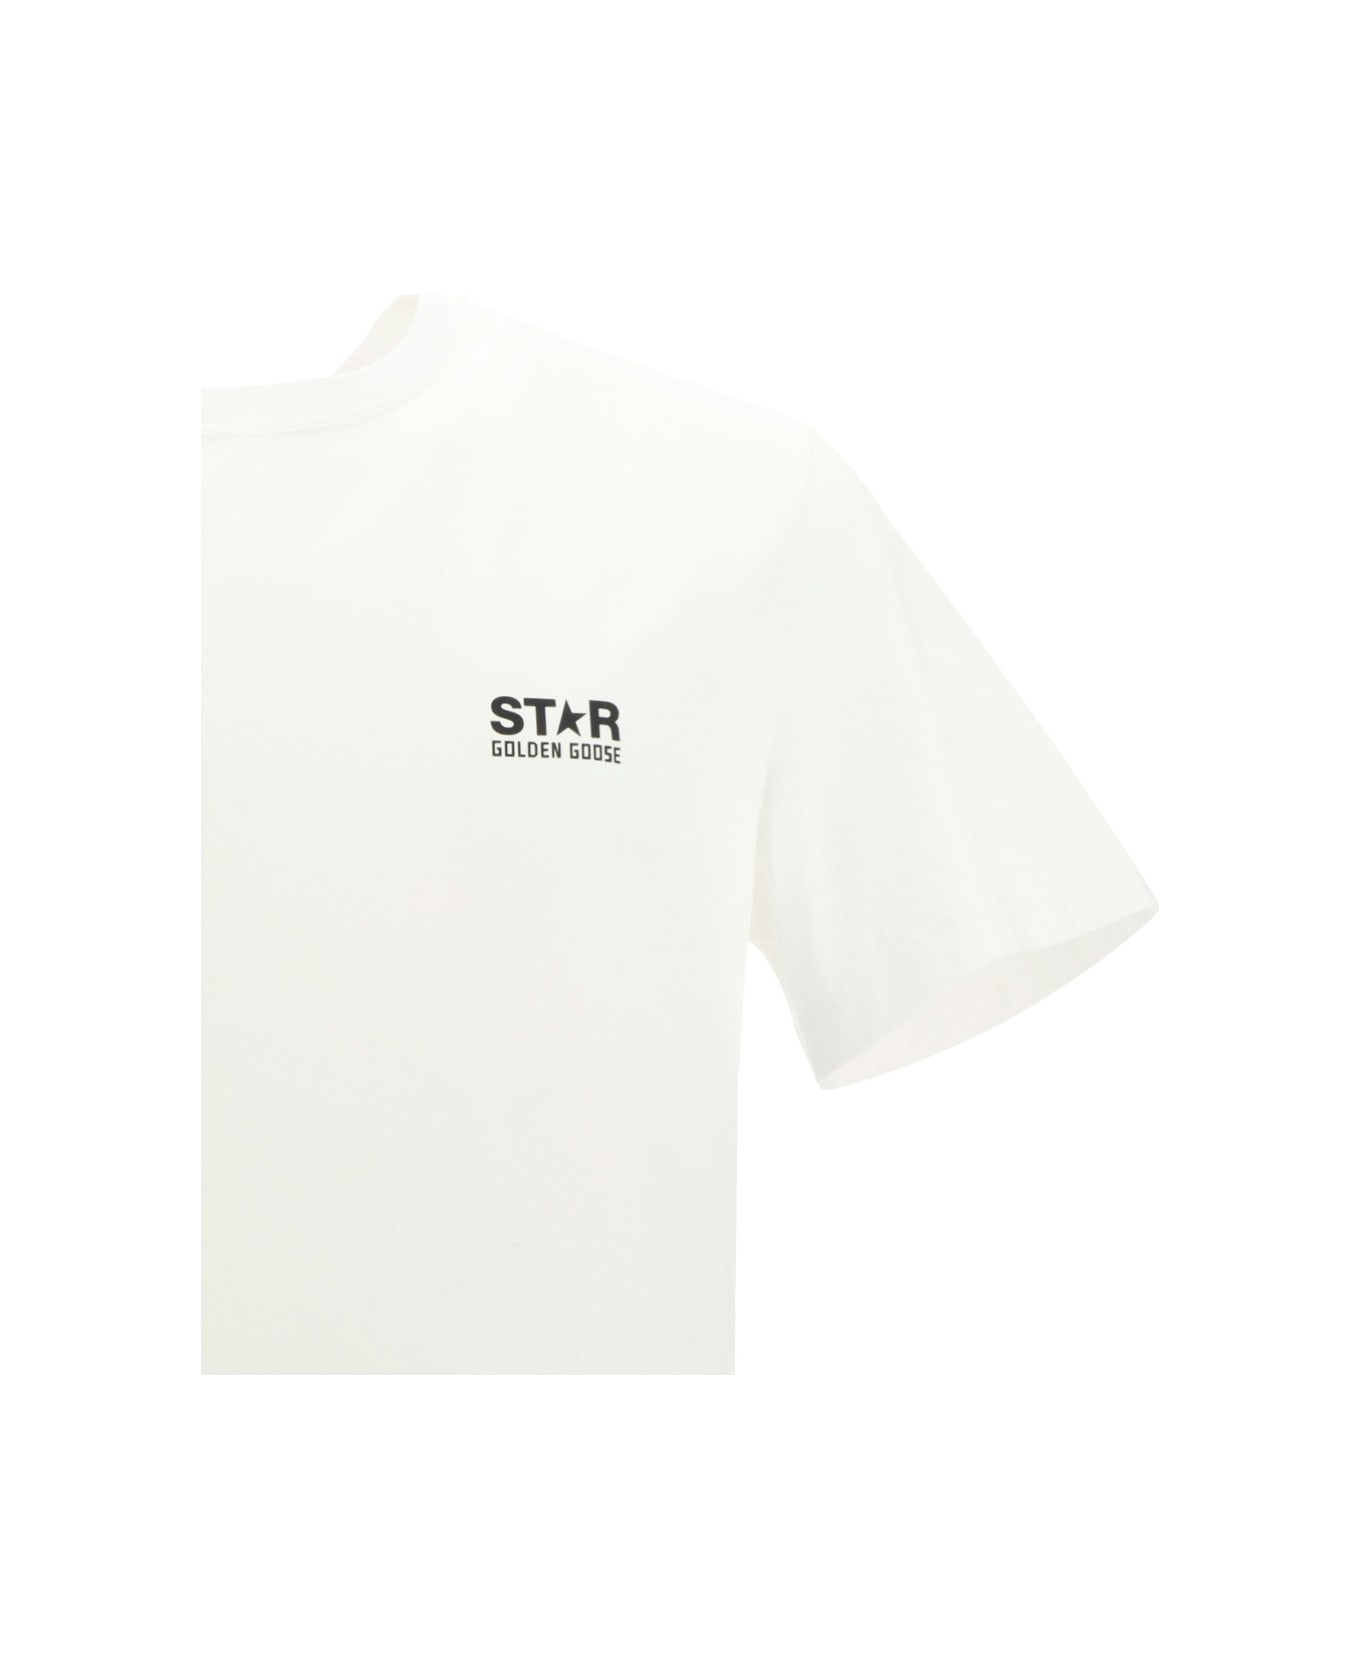 Golden Goose Star T-shirt - Optic White/black シャツ